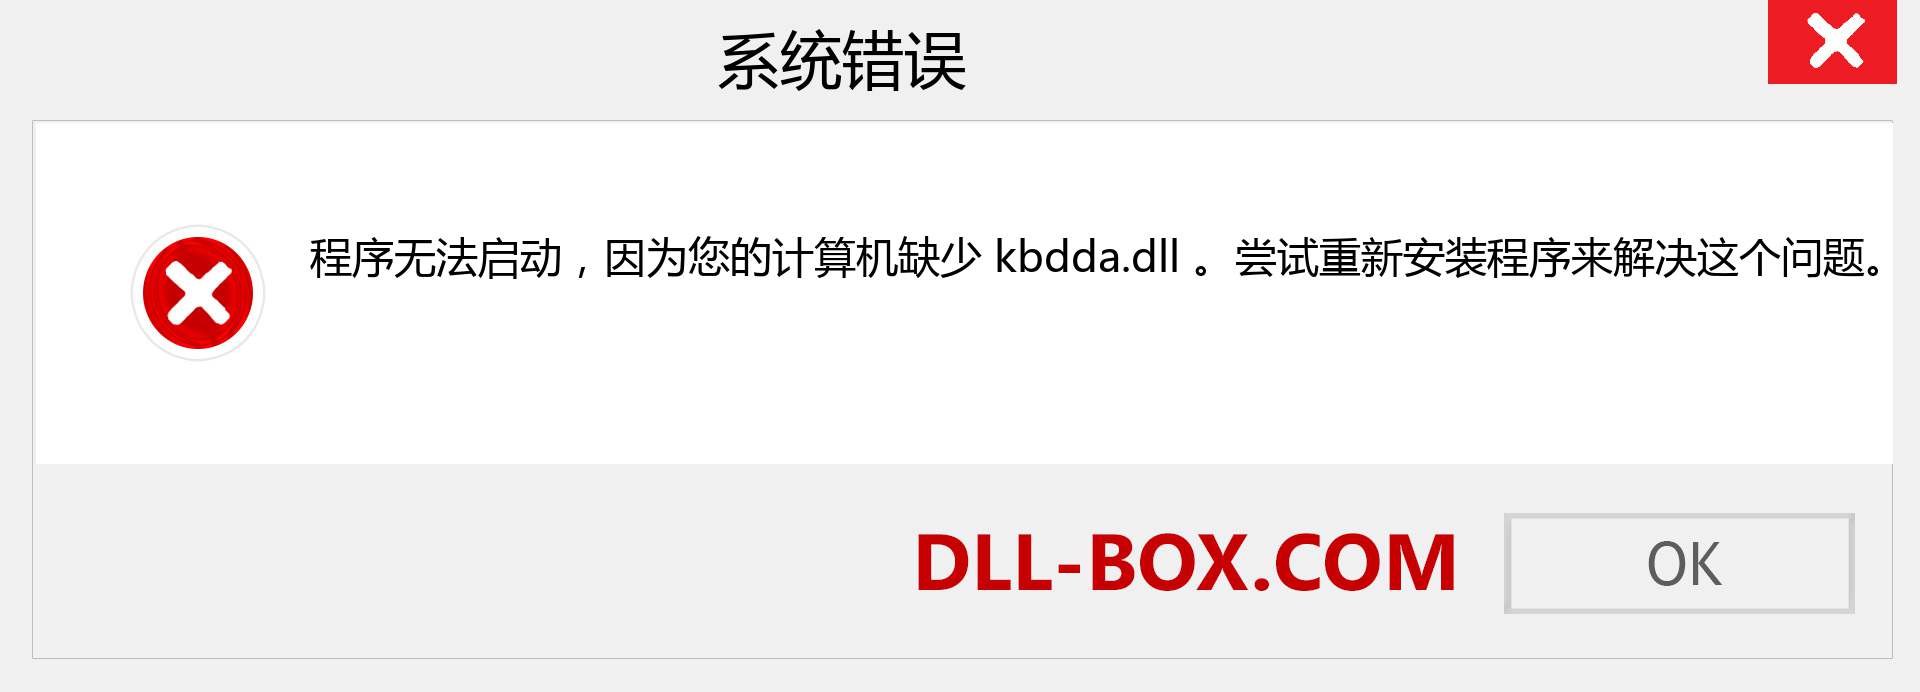 kbdda.dll 文件丢失？。 适用于 Windows 7、8、10 的下载 - 修复 Windows、照片、图像上的 kbdda dll 丢失错误